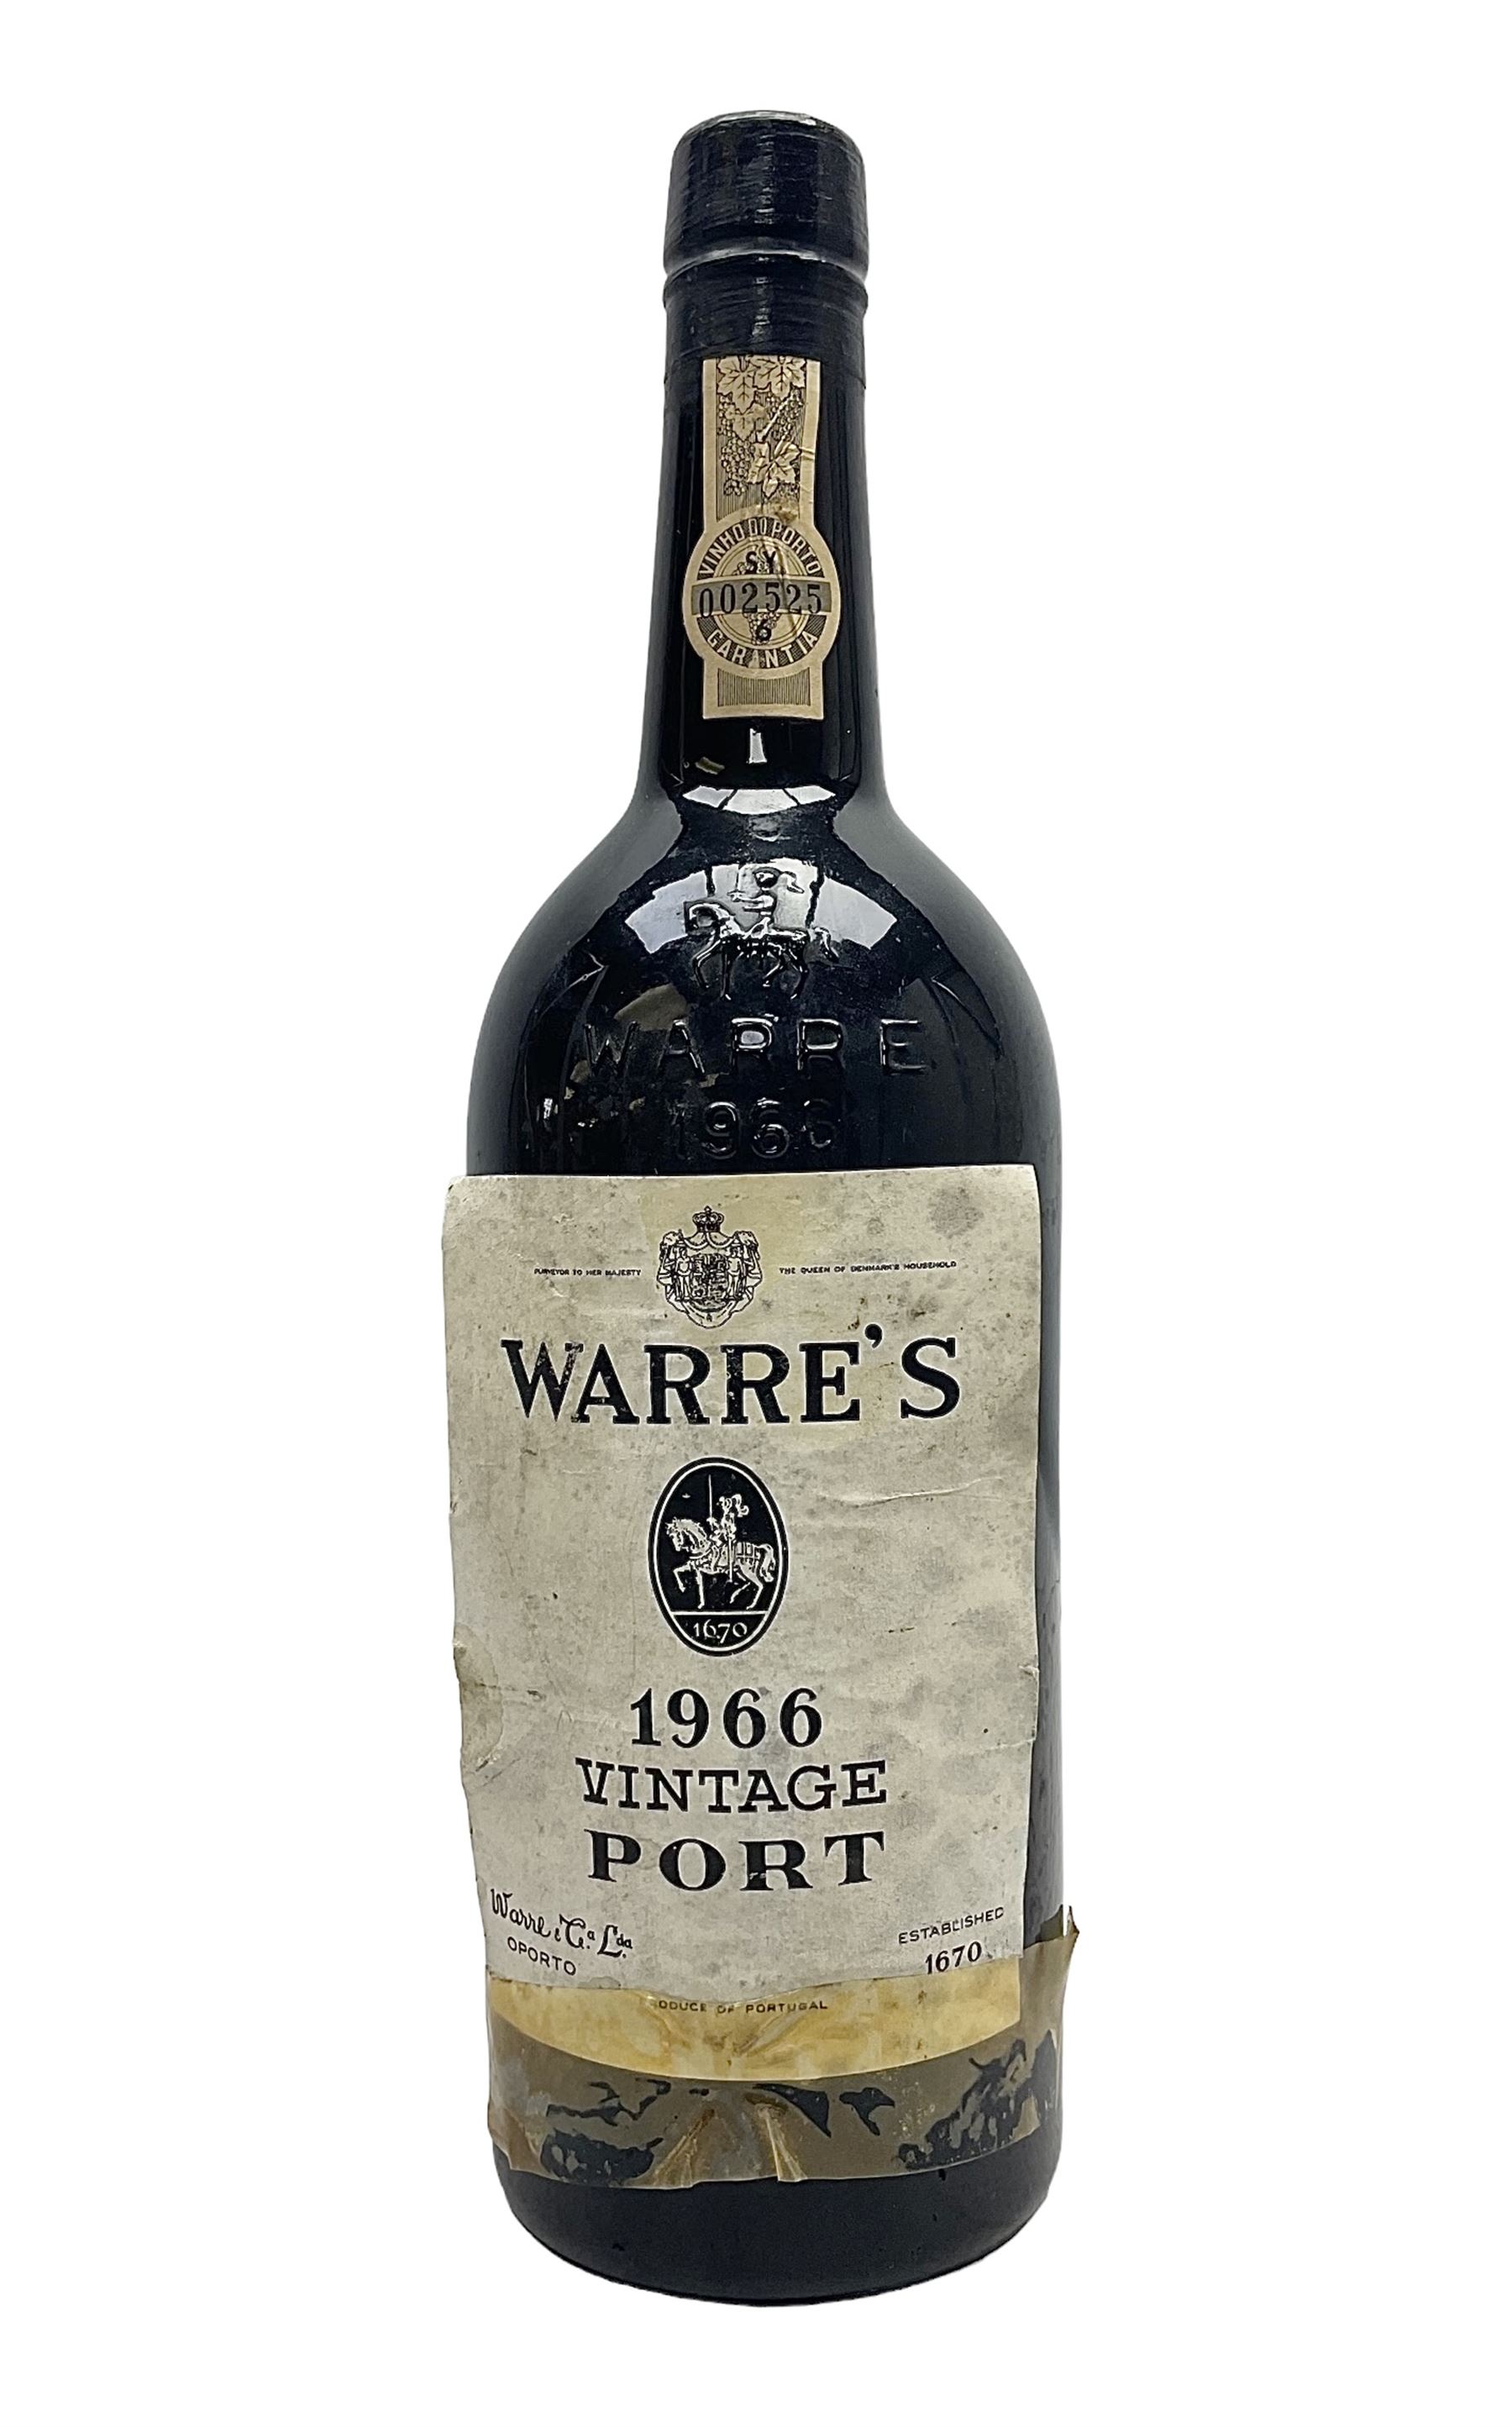 Warre's 1966